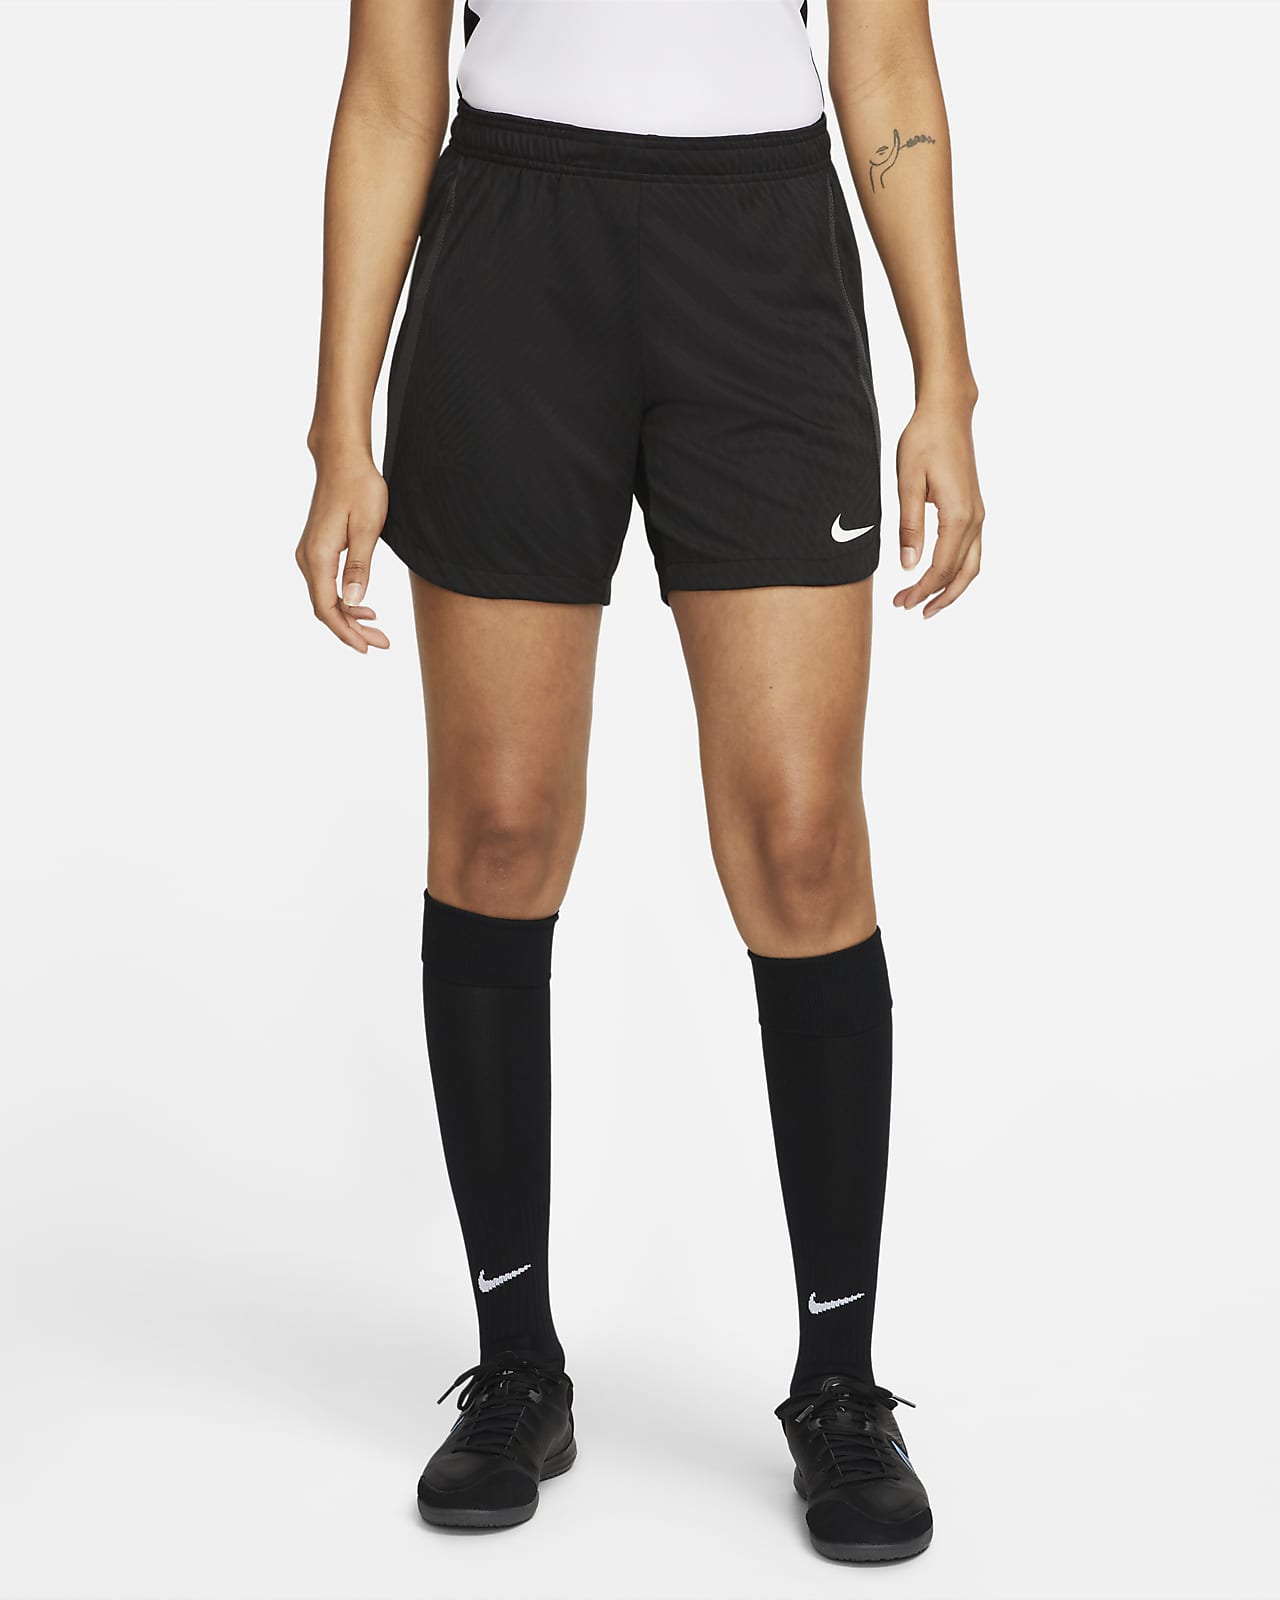 Shorts de para mujer Nike Dri-FIT Nike.com